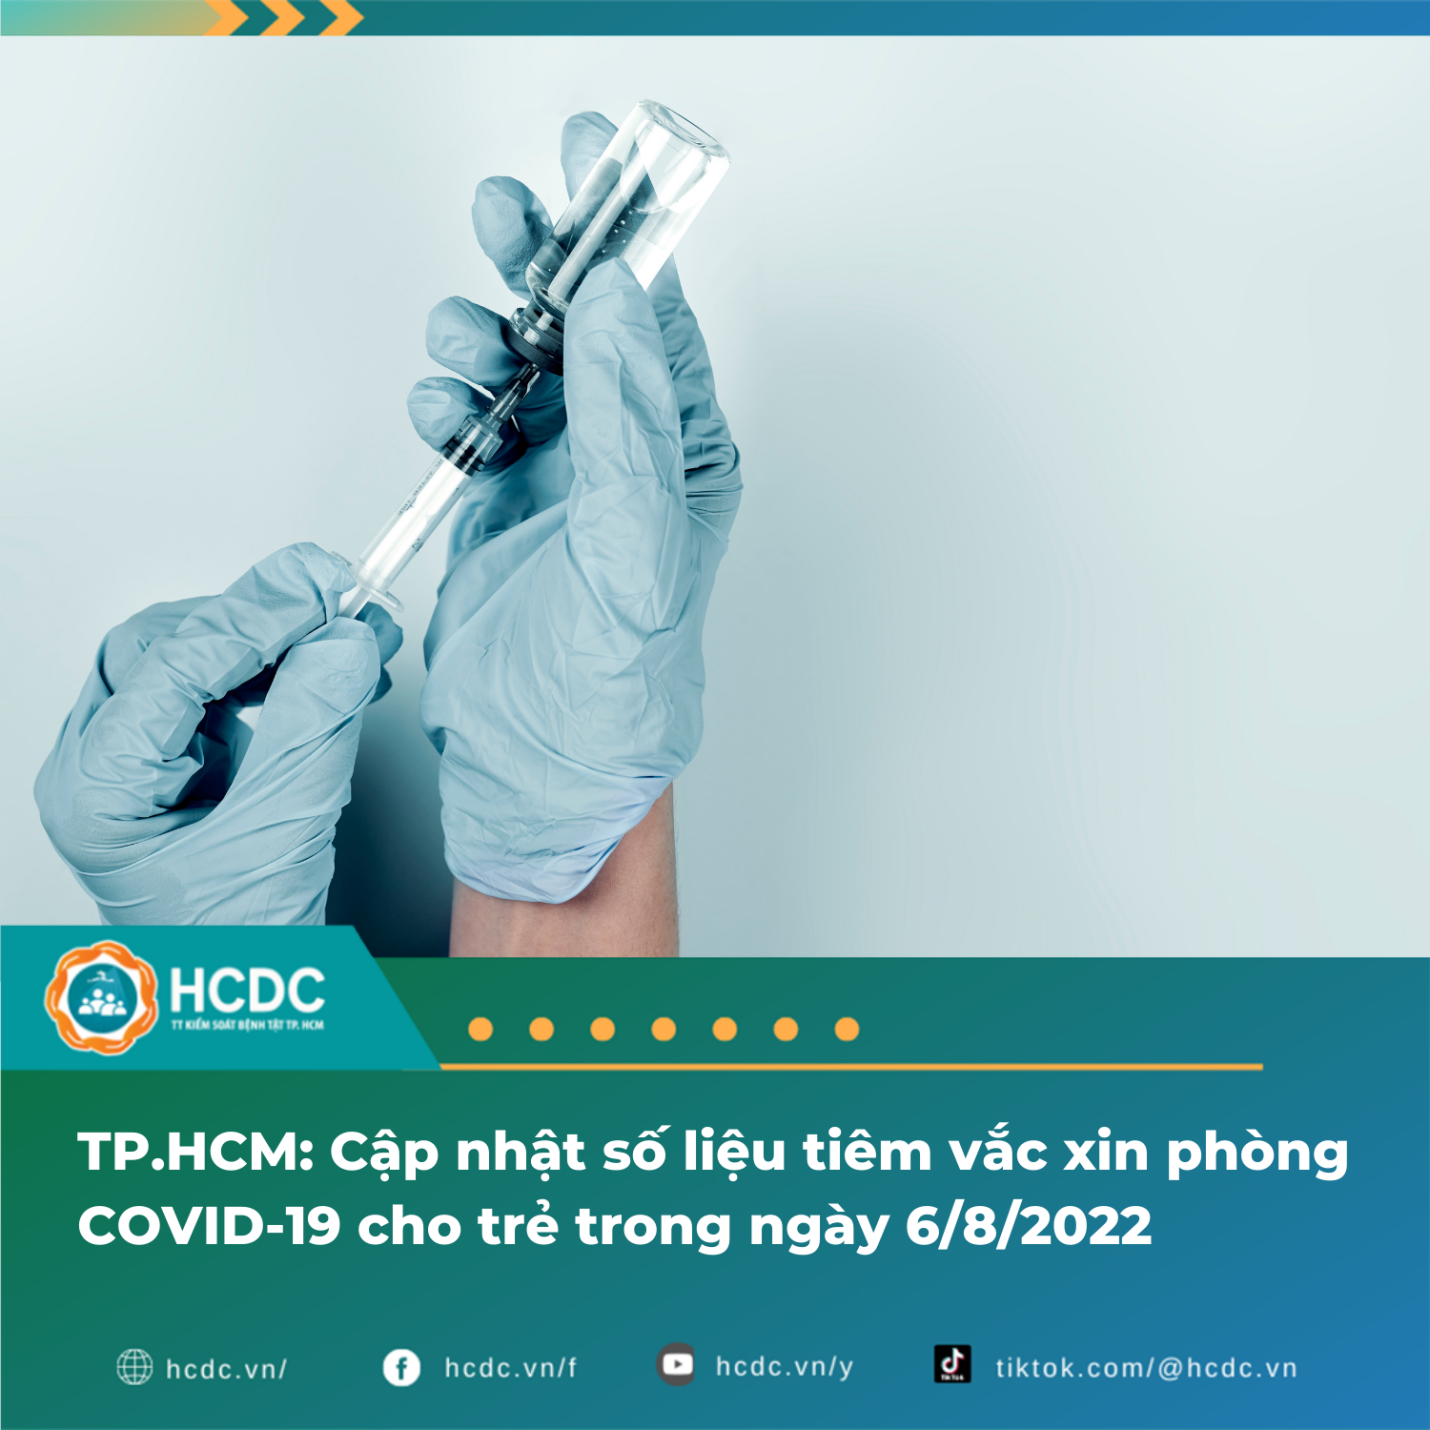 TP.HCM: Cập nhật số liệu tiêm vắc xin phòng COVID-19 cho trẻ trong ngày 6/8/2022